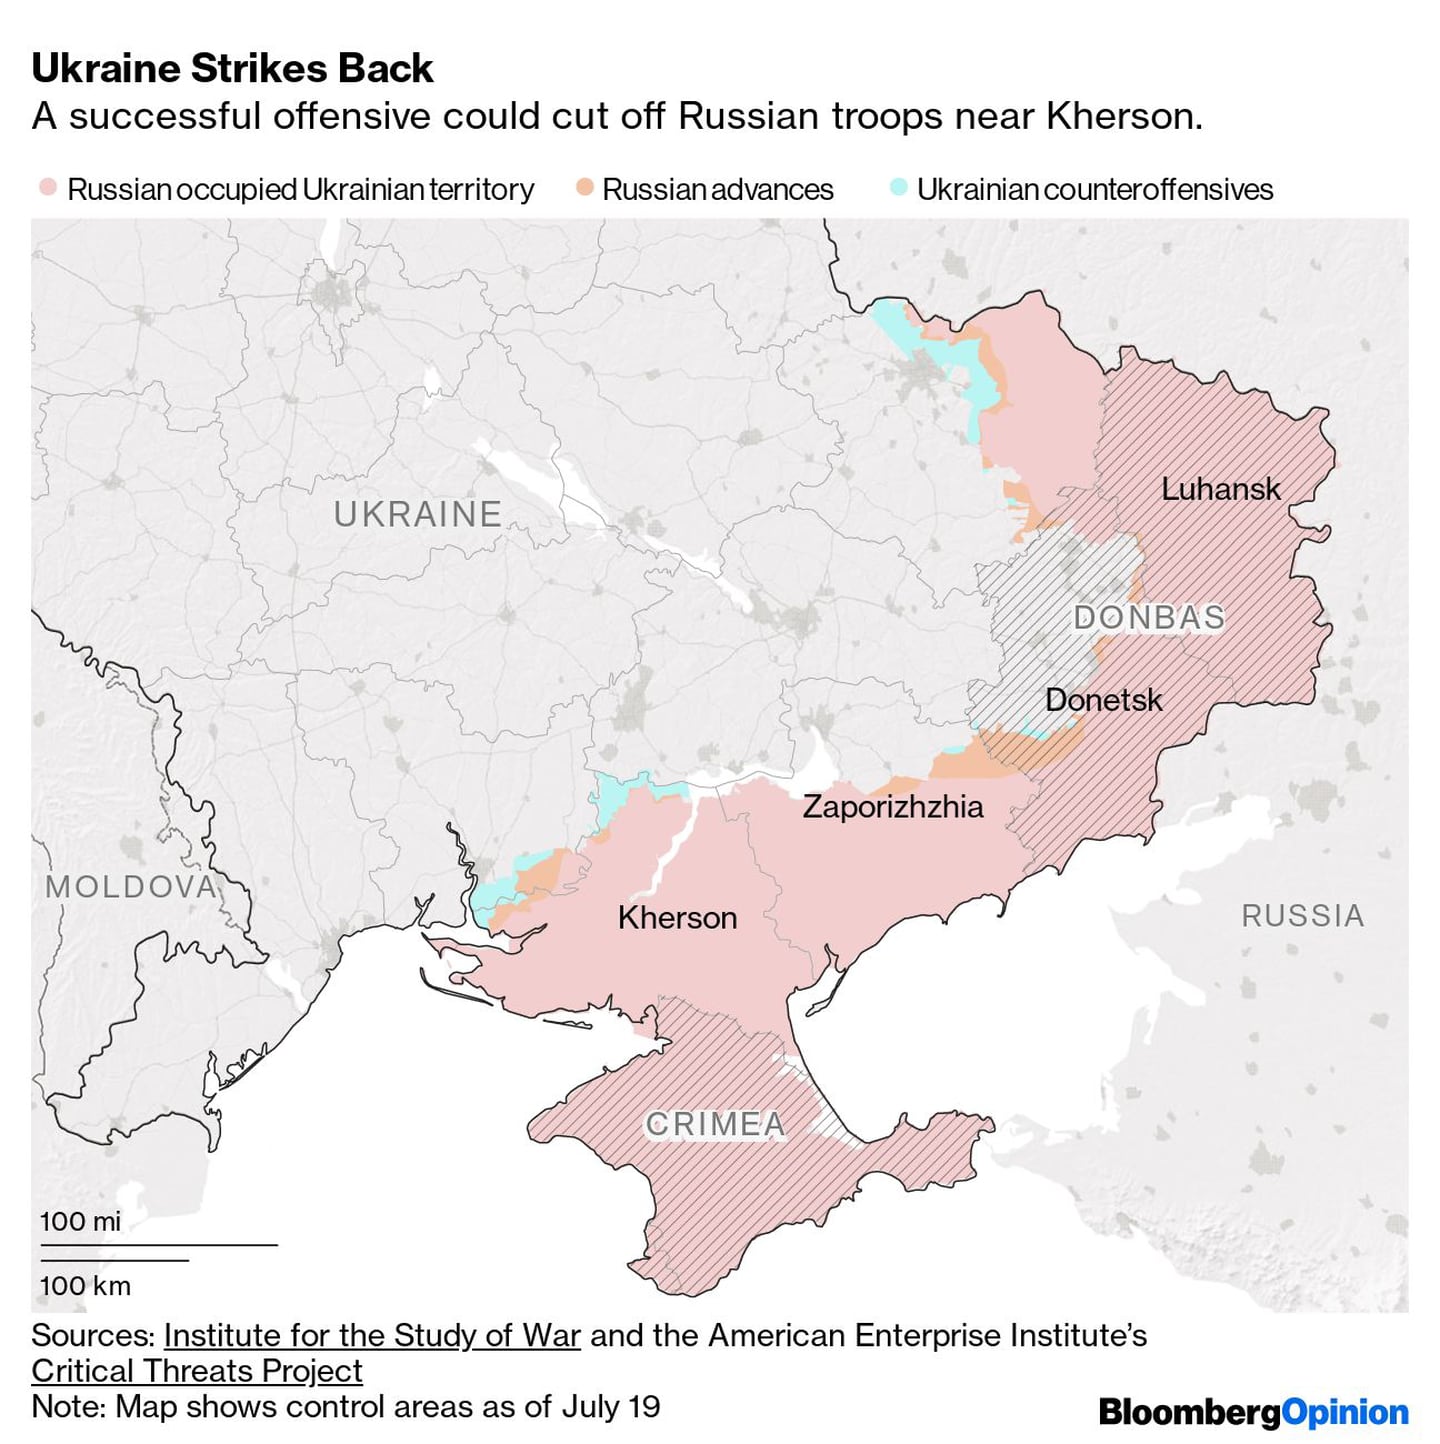 Una ofensiva exitosa podría bloquear a las tropas rusias cerca de Kherson
En rosa: territorio ucraniano ocupado por Rusia
En naranja: avances rusos
En celeste: contraofensivas ucranianasdfd